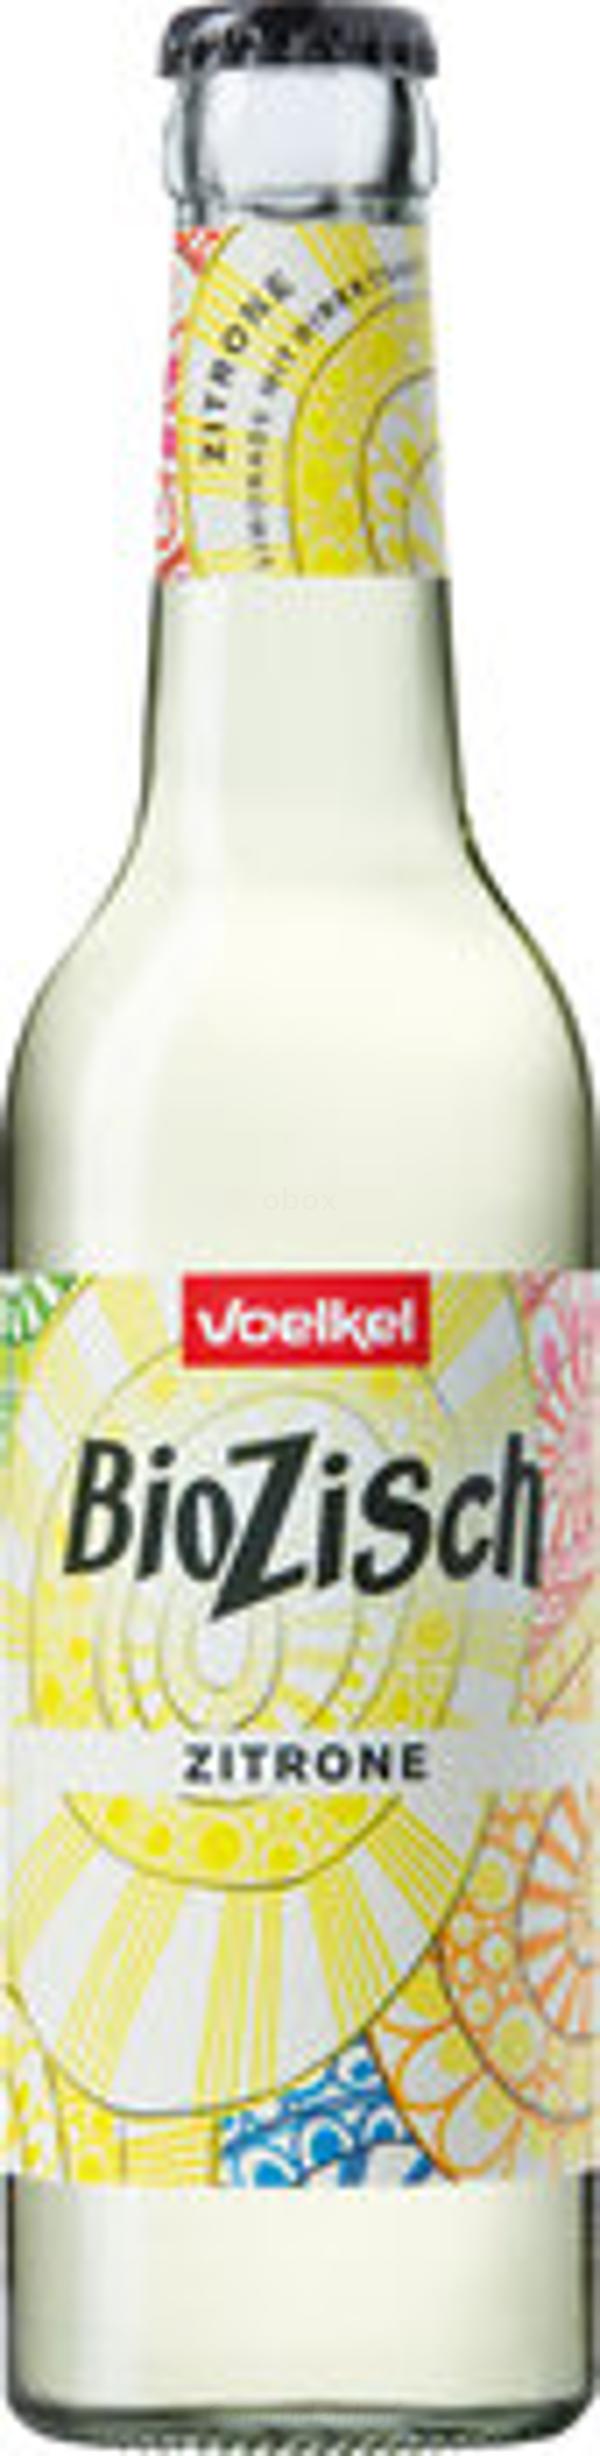 Produktfoto zu Bio Zisch Zitrone (0,33)